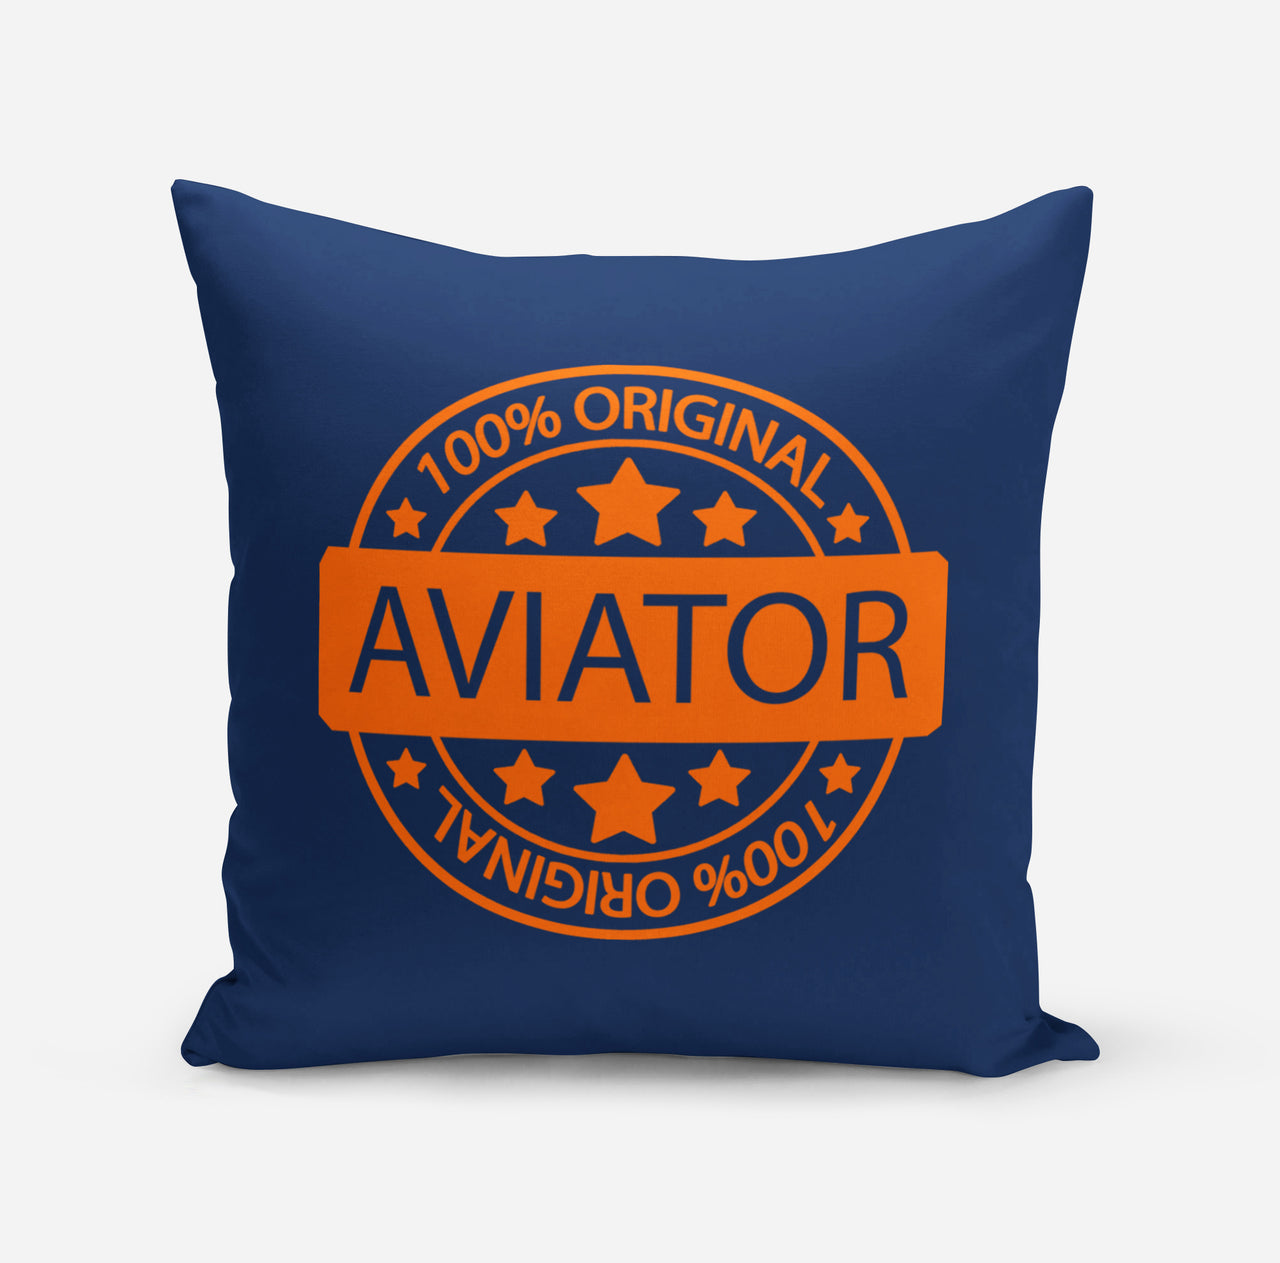 100 Original Aviator Designed Pillows